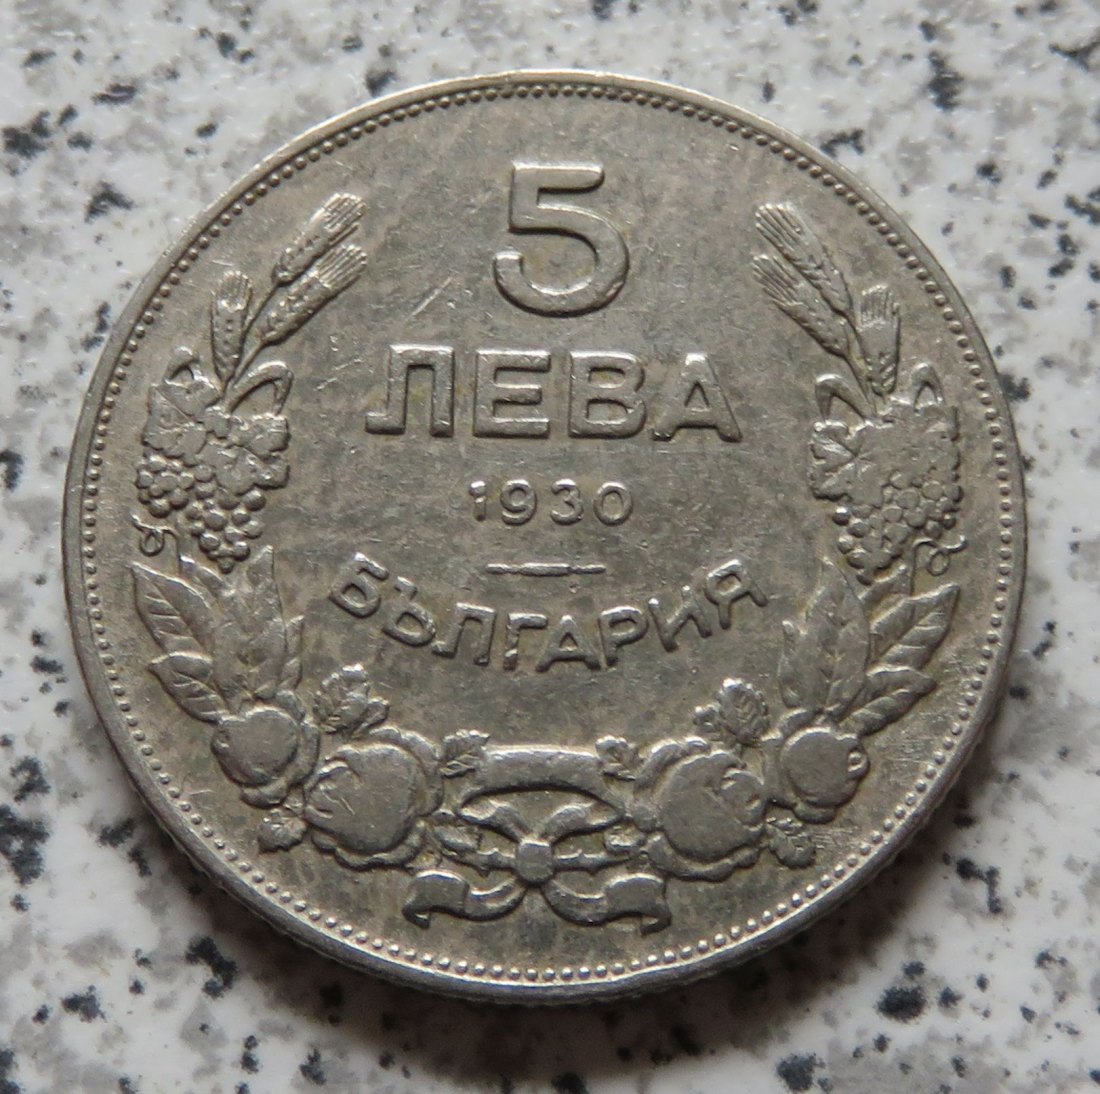  Bulgarien 5 Lewa 1930   